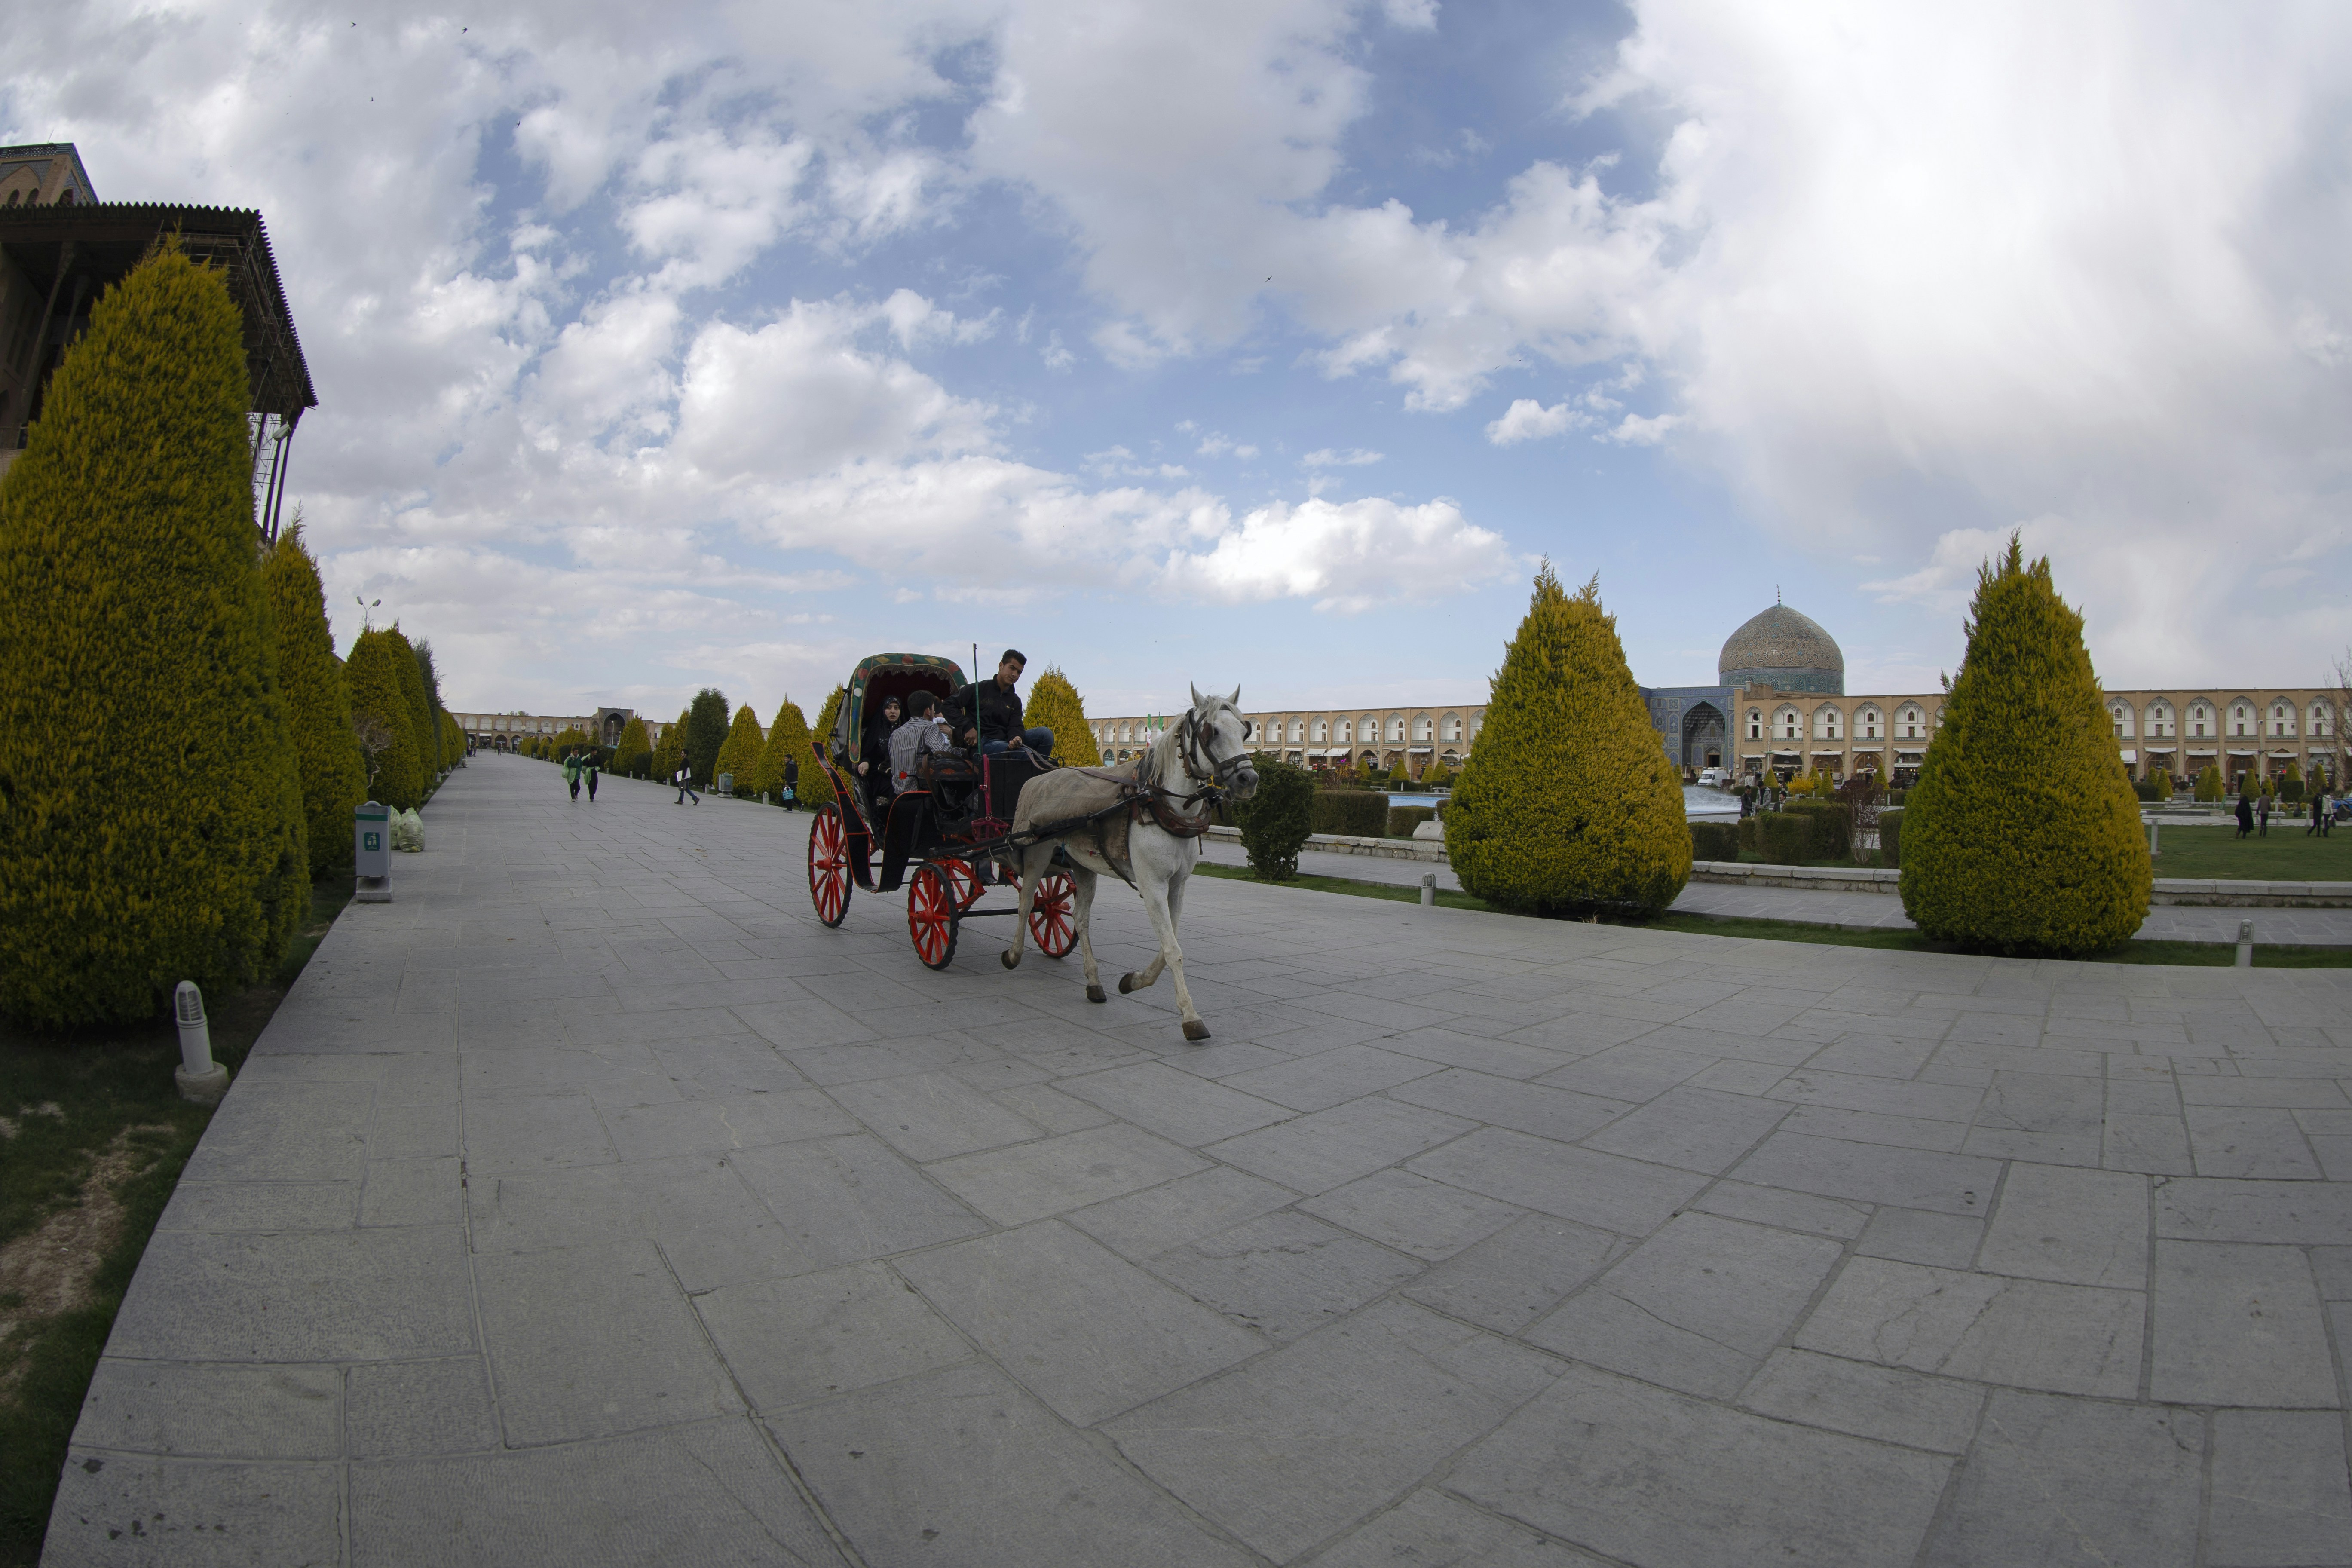 شهر زیبای اصفهان از نگاه دوربین - میدان تاریخی نقش جهان